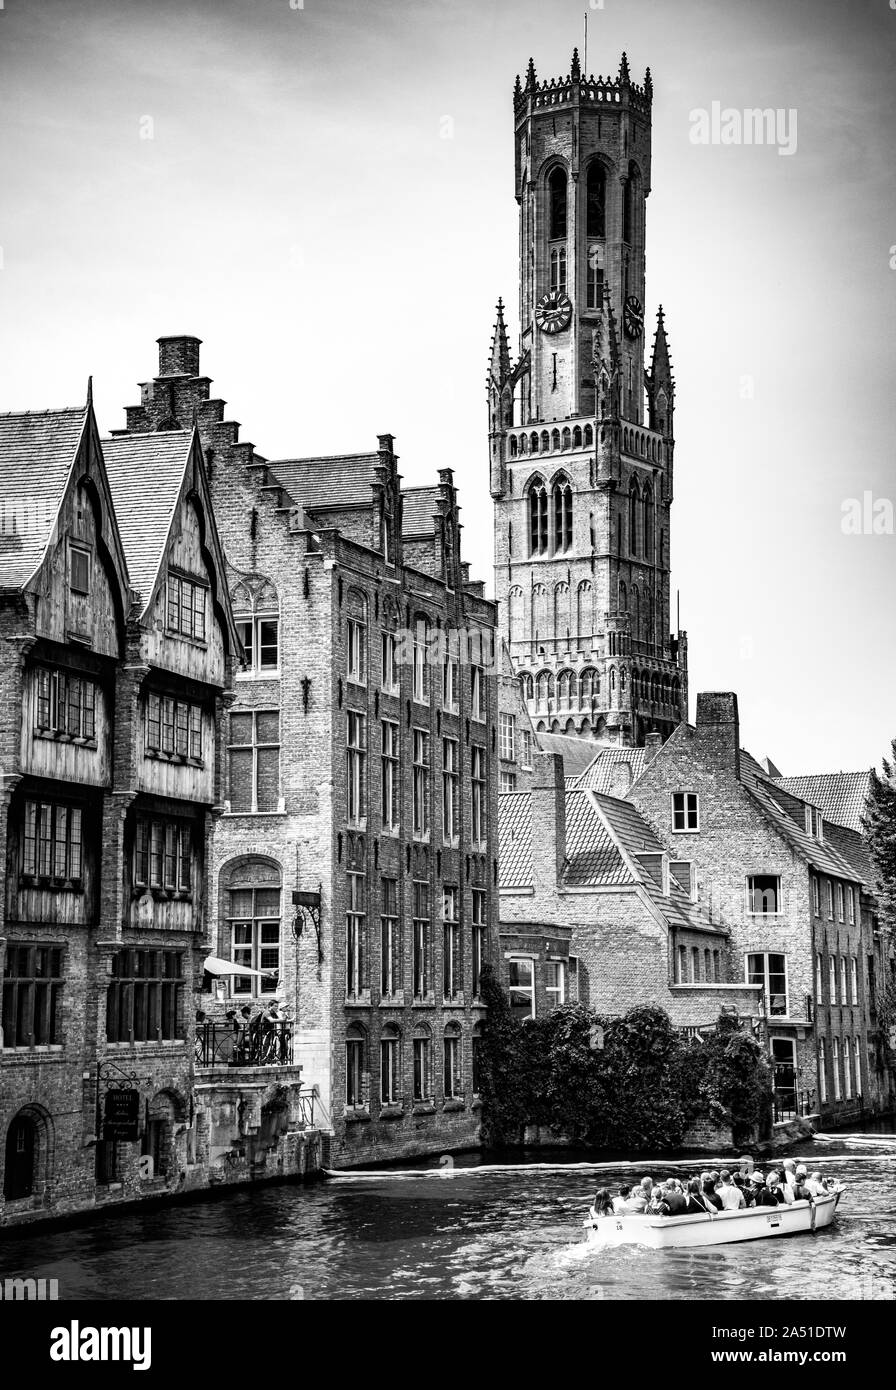 Croisière touristique en bateau à travers le canal de Dijver entouré d'une architecture médiévale avec la tour Belfort en arrière-plan, Bruges, Flandre Occidentale, Belgique Banque D'Images